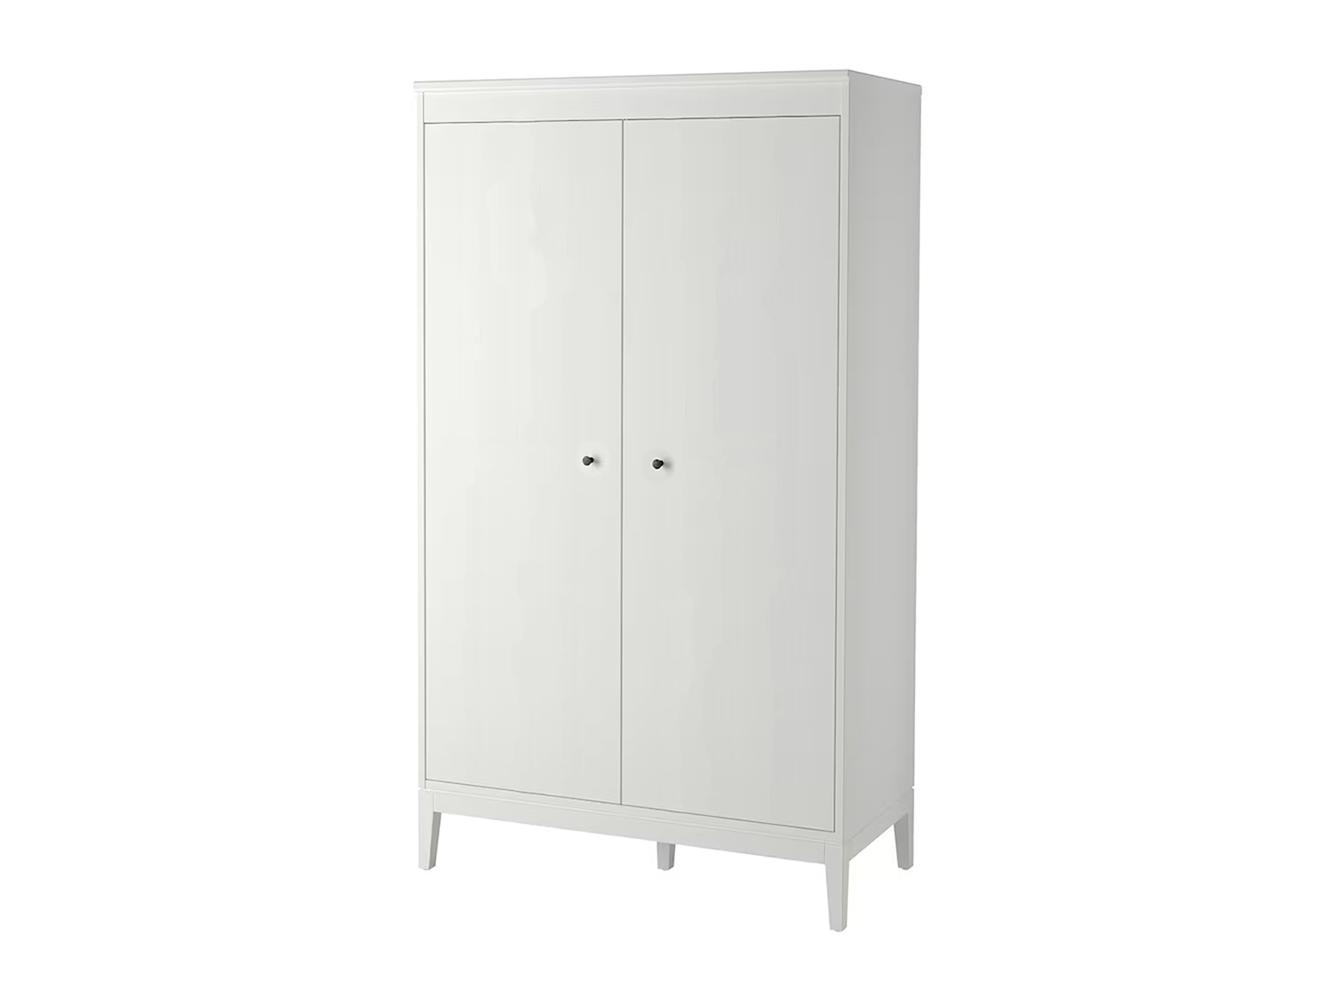 Распашной шкаф Иданас 13 white ИКЕА (IKEA) изображение товара